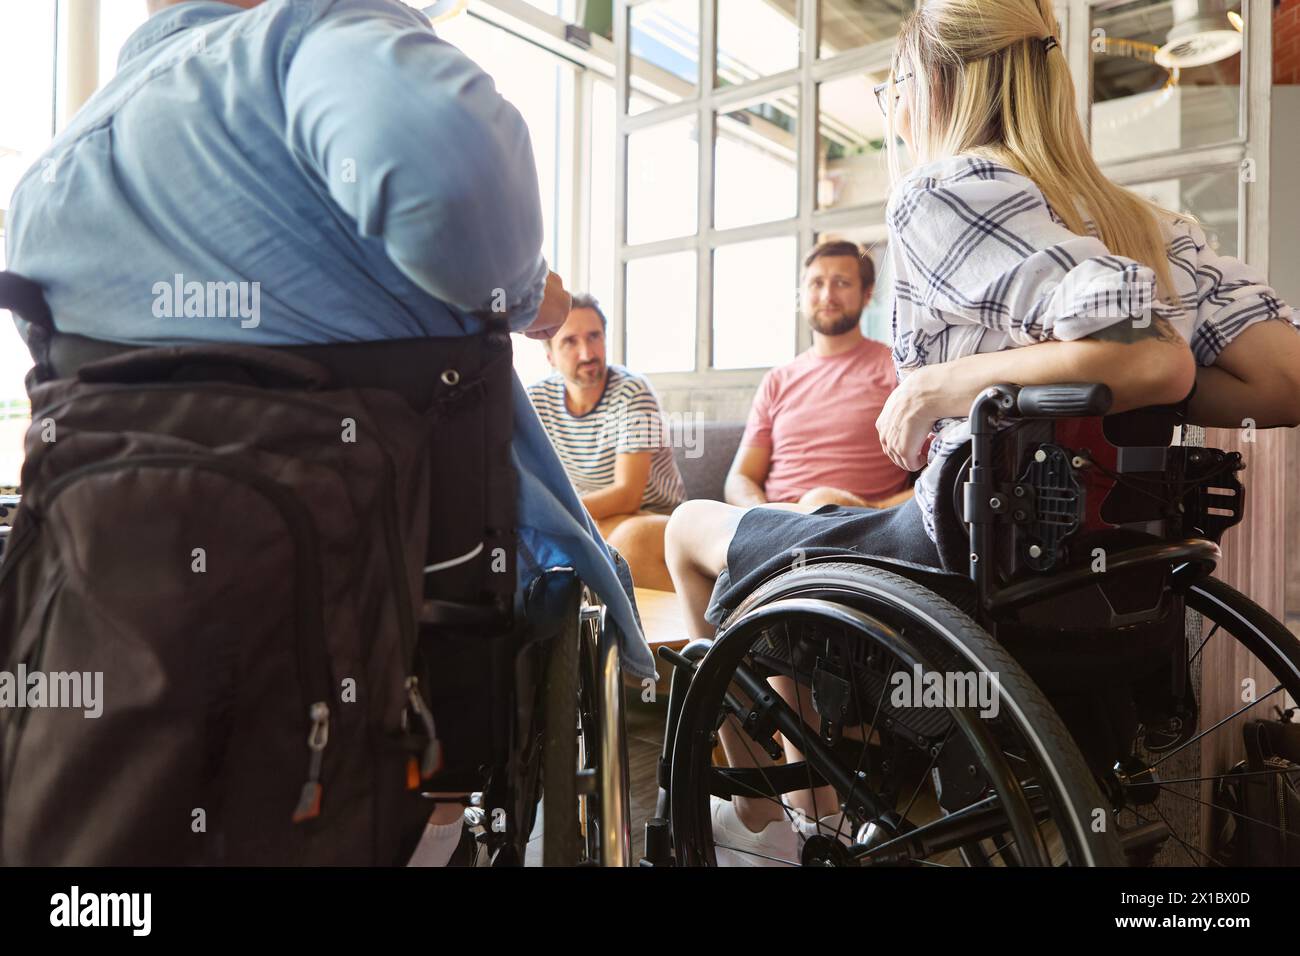 Eine Person, die einen Rollstuhl benutzt, führt in einem sonnigen cafÃ ein lebhaftes Gespräch mit Freunden. Das Bild zeigt Inklusion und soziale Interaktion zwischen d Stockfoto